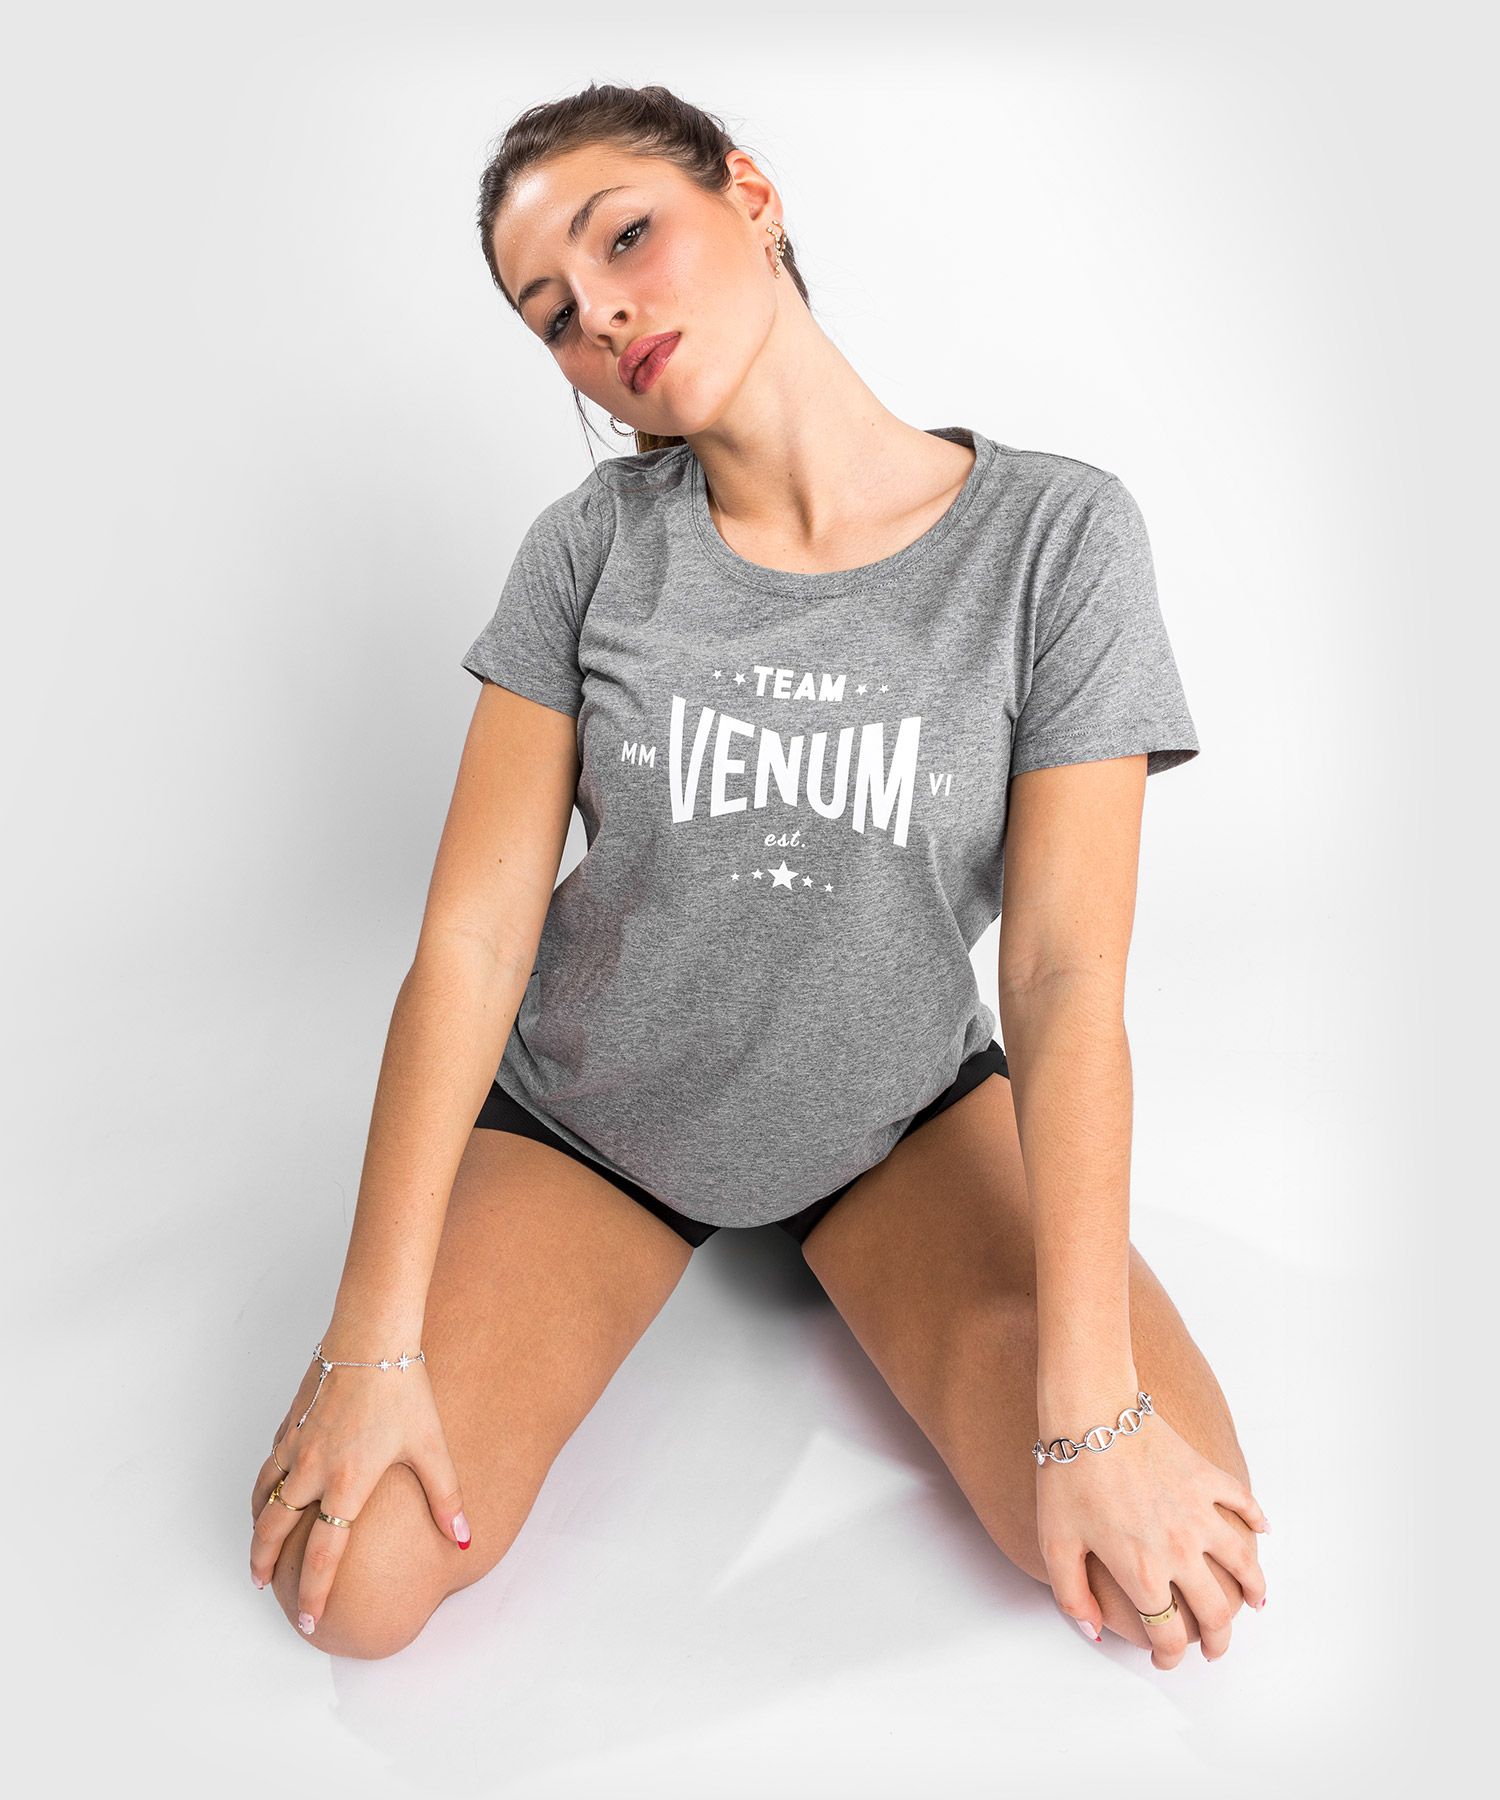 Venum Team 2.0 Tシャツ -レディース- ライトヘザーグレー